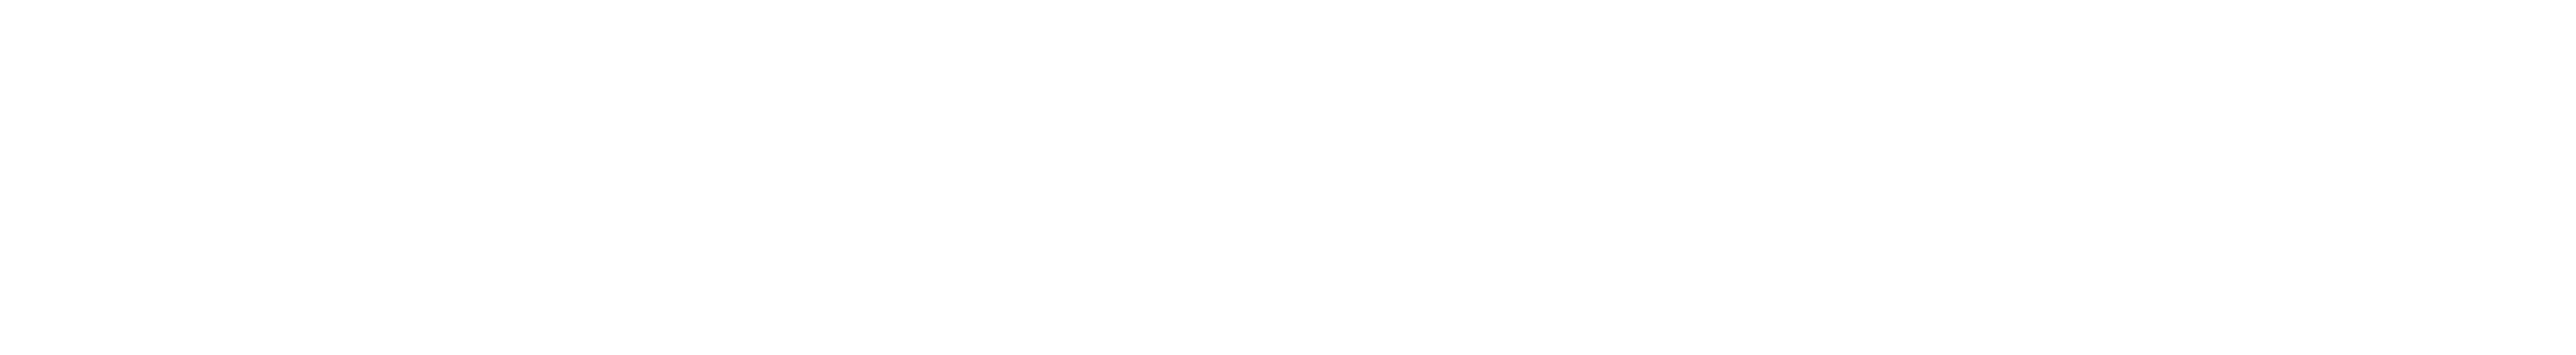 Logos UZH, ZHAW, ZHdK, PHZH